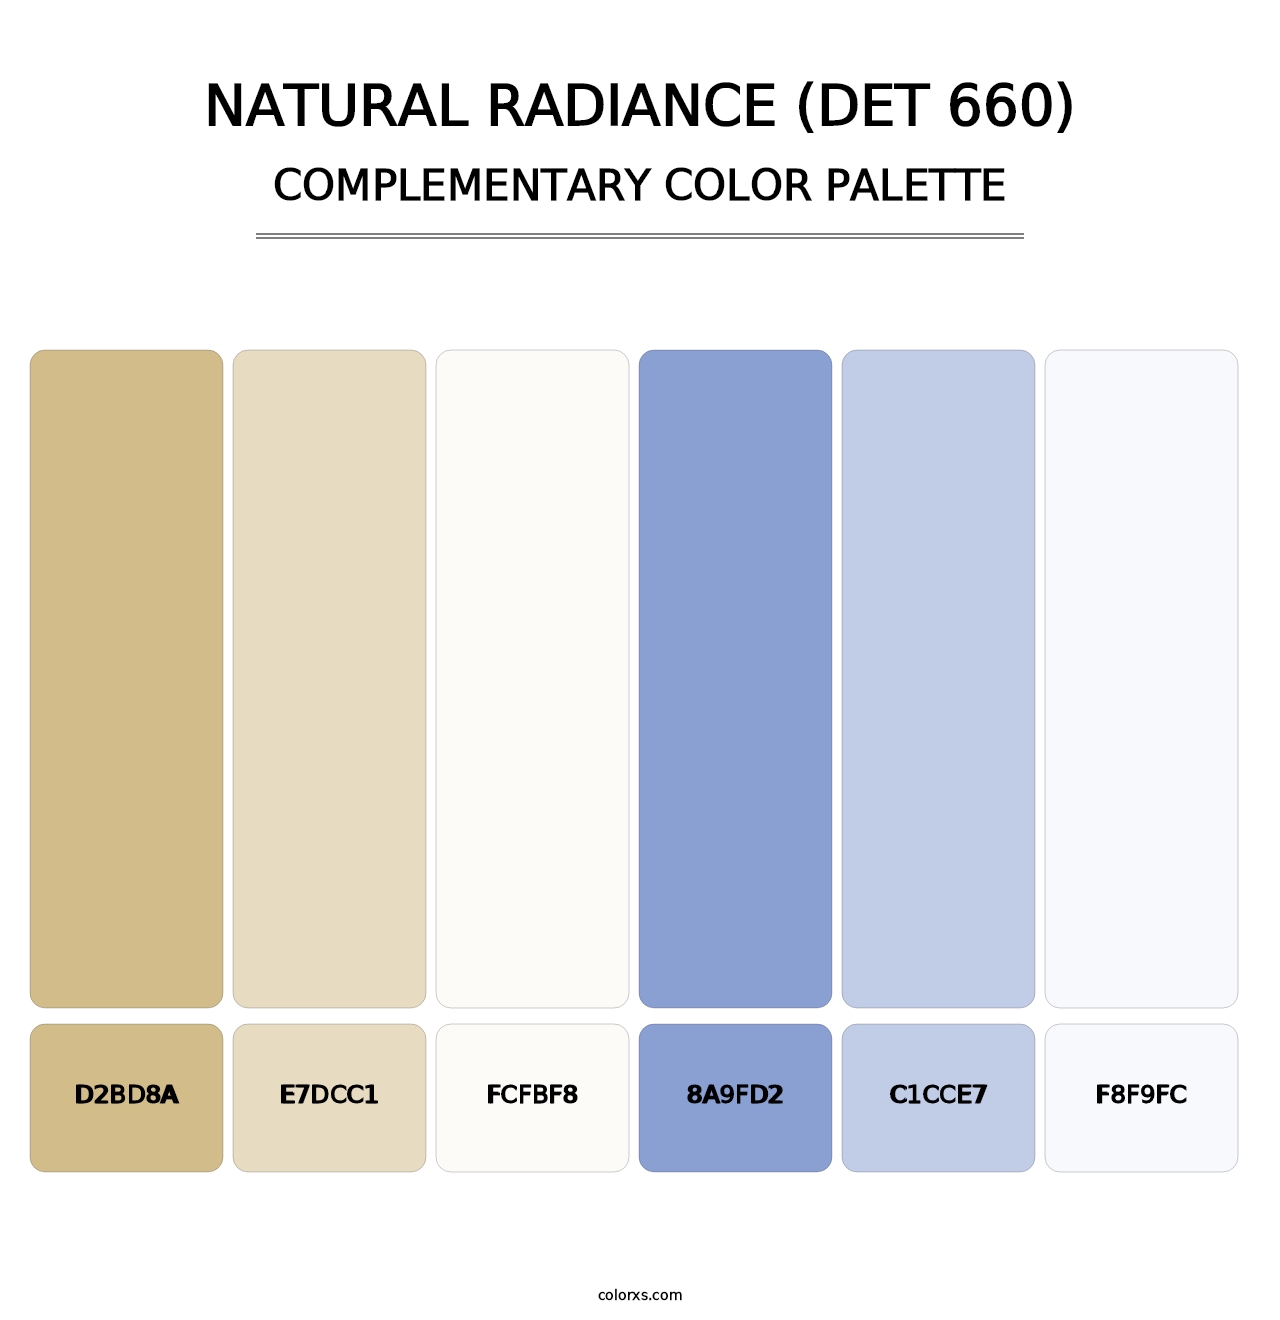 Natural Radiance (DET 660) - Complementary Color Palette